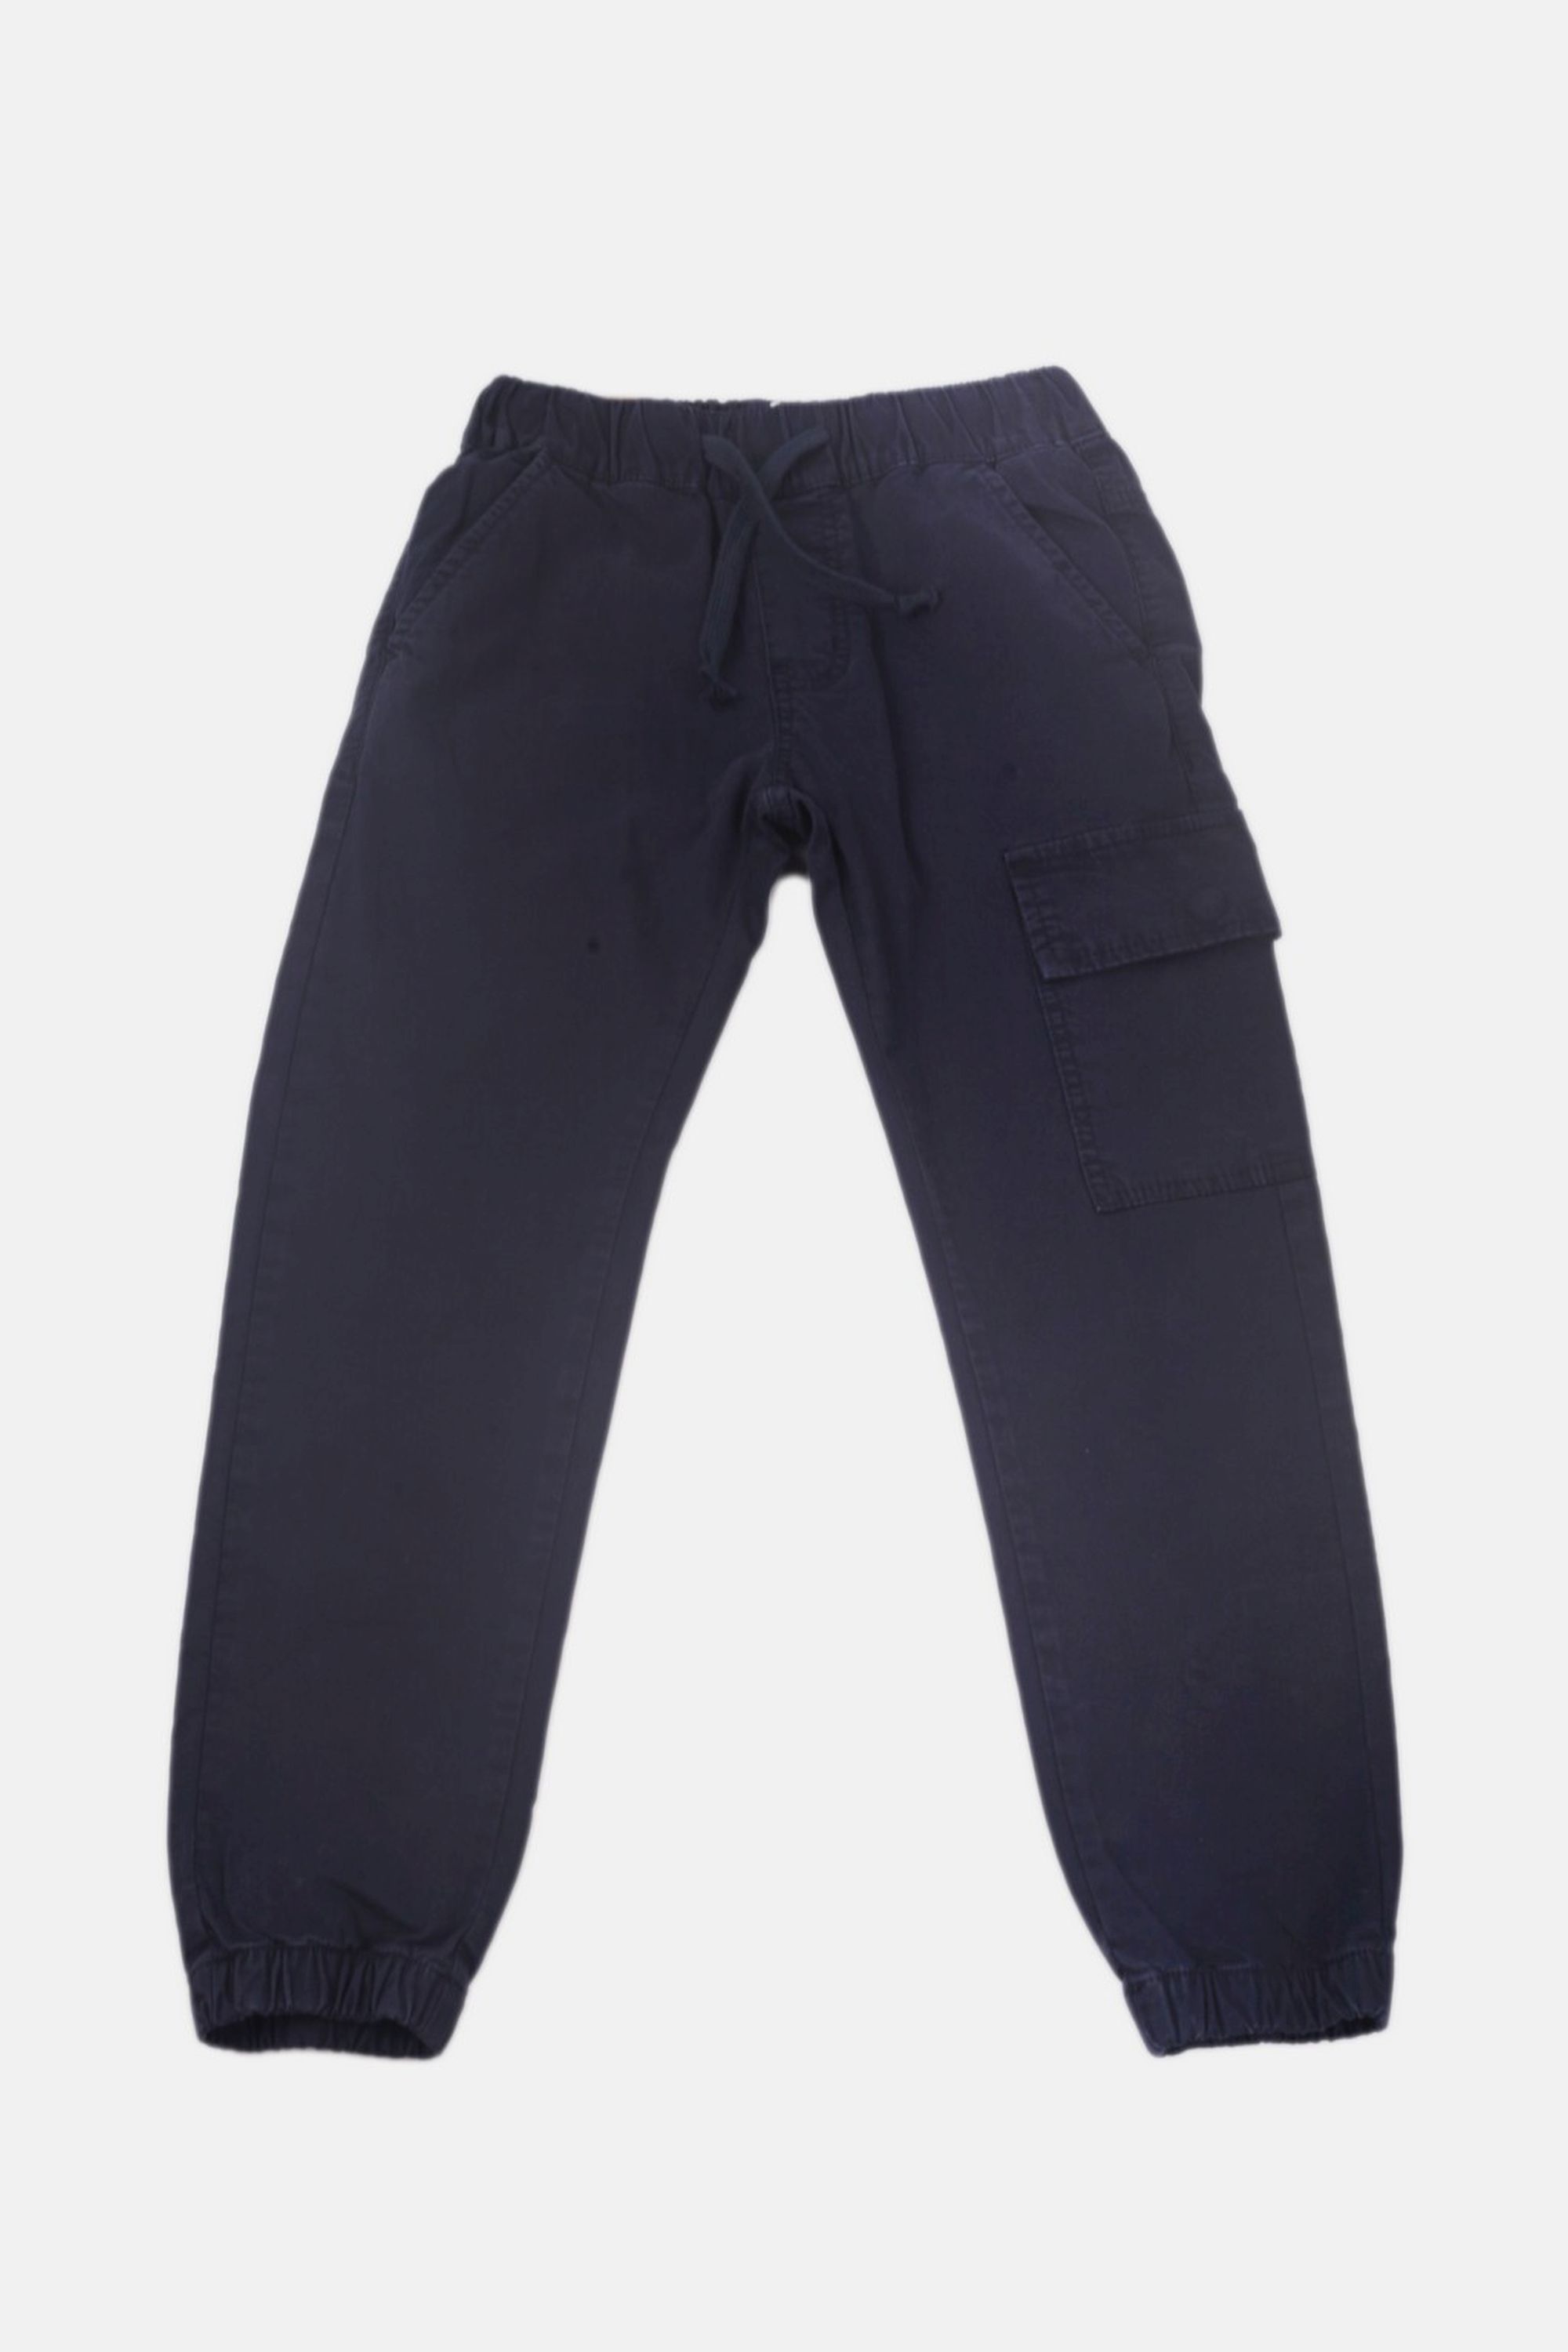 Chlapecké bavlněné kalhoty s gumou v pase/Hnědá, modrá Barva: Modrá, Velikost: vel. 5 (108/114 cm)